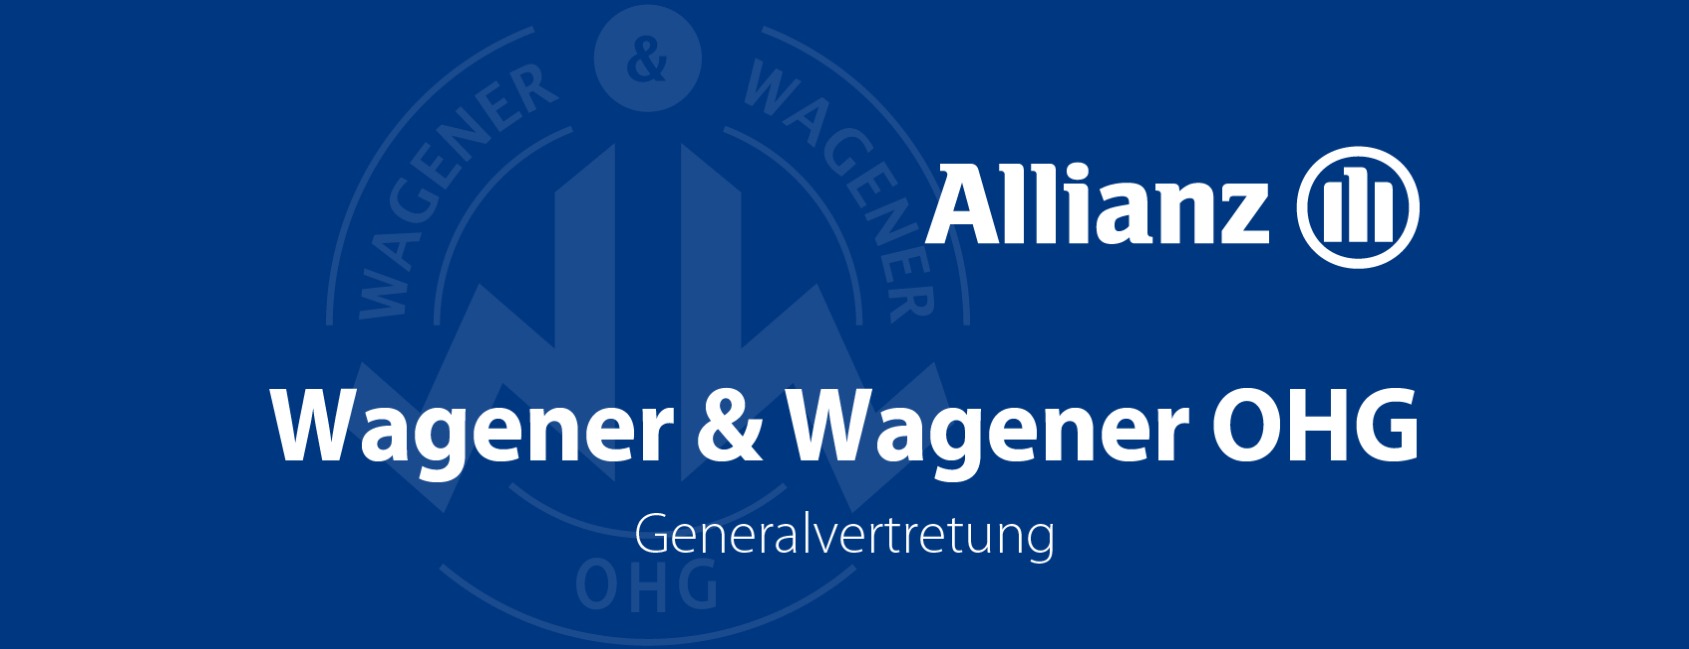 Allianz Versicherung Wagener u.Wagener OHG Wilm Wagener Herford - Agenturbild